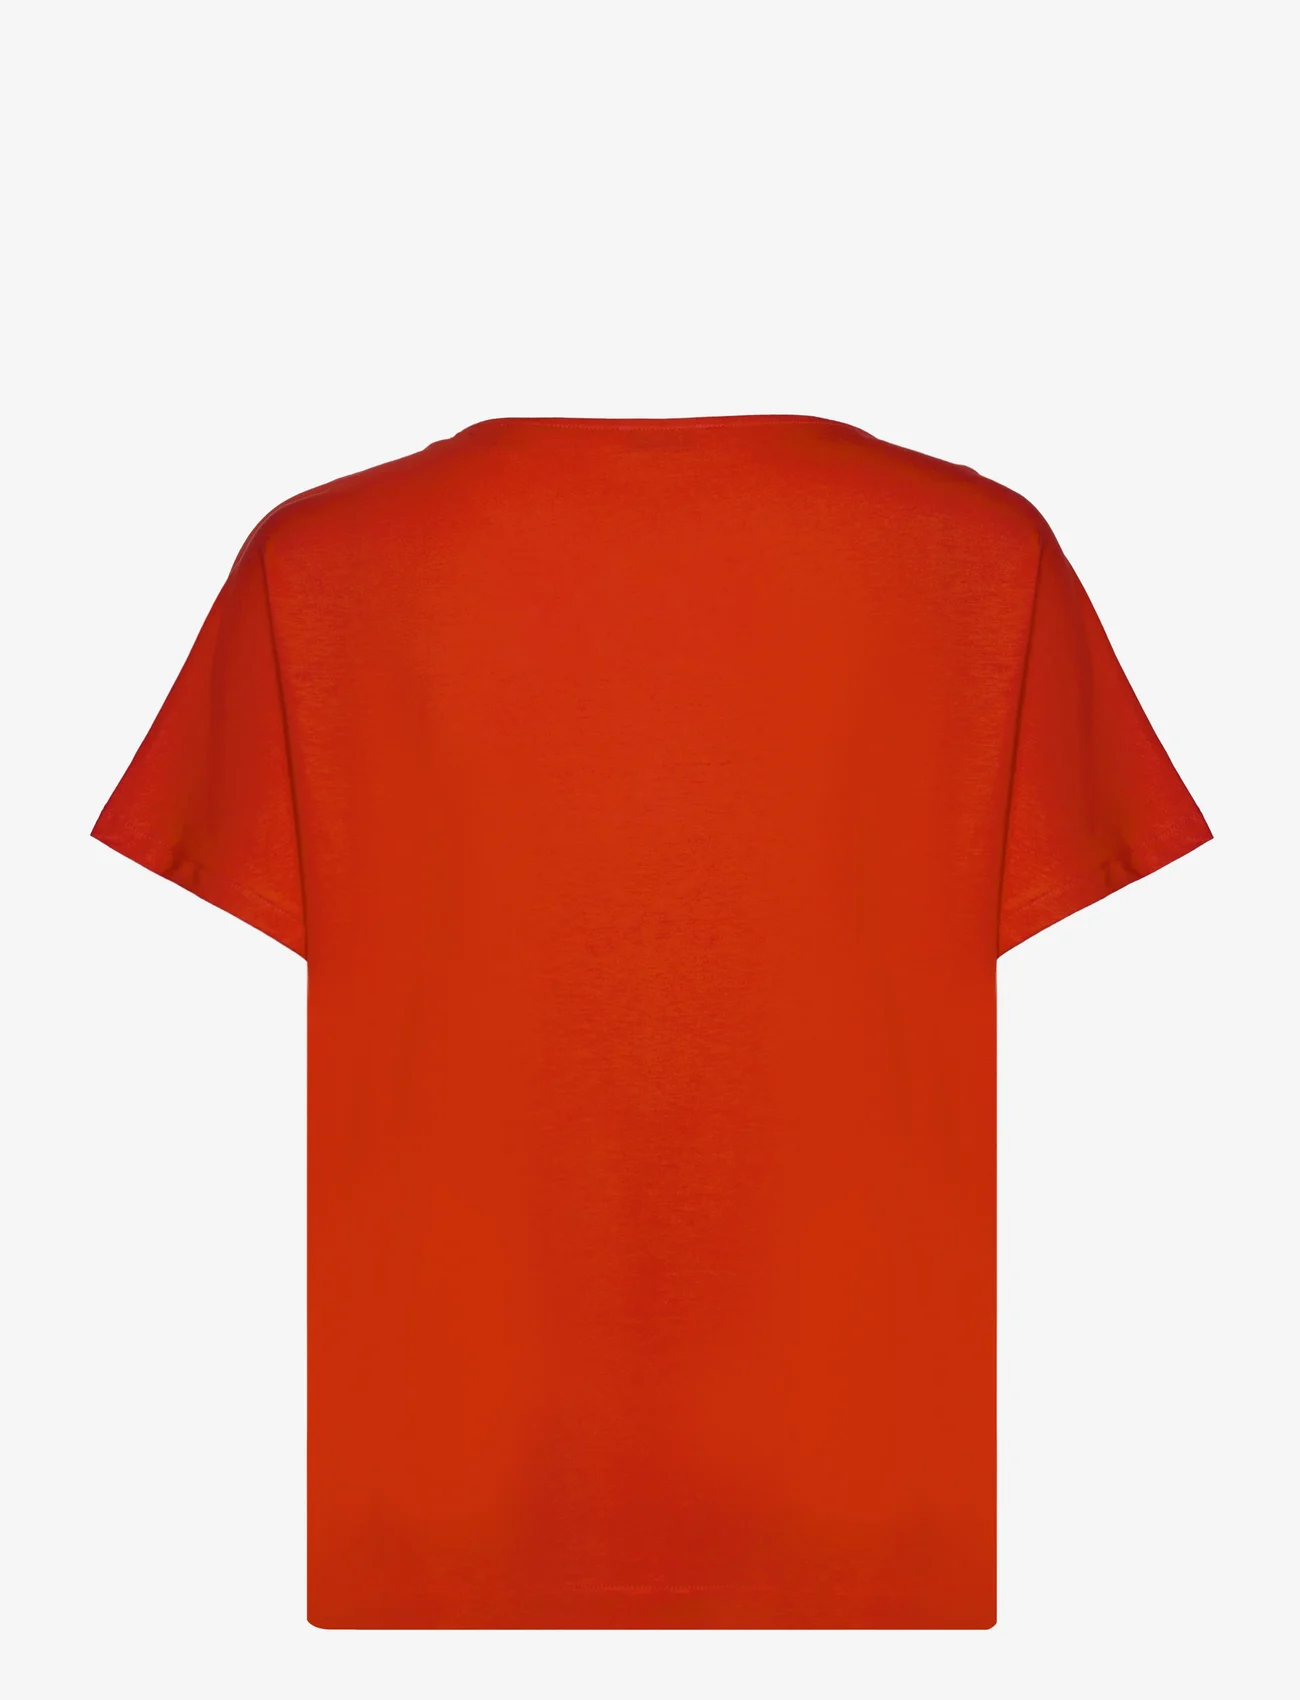 Esprit Casual - T-Shirts - die niedrigsten preise - red - 1